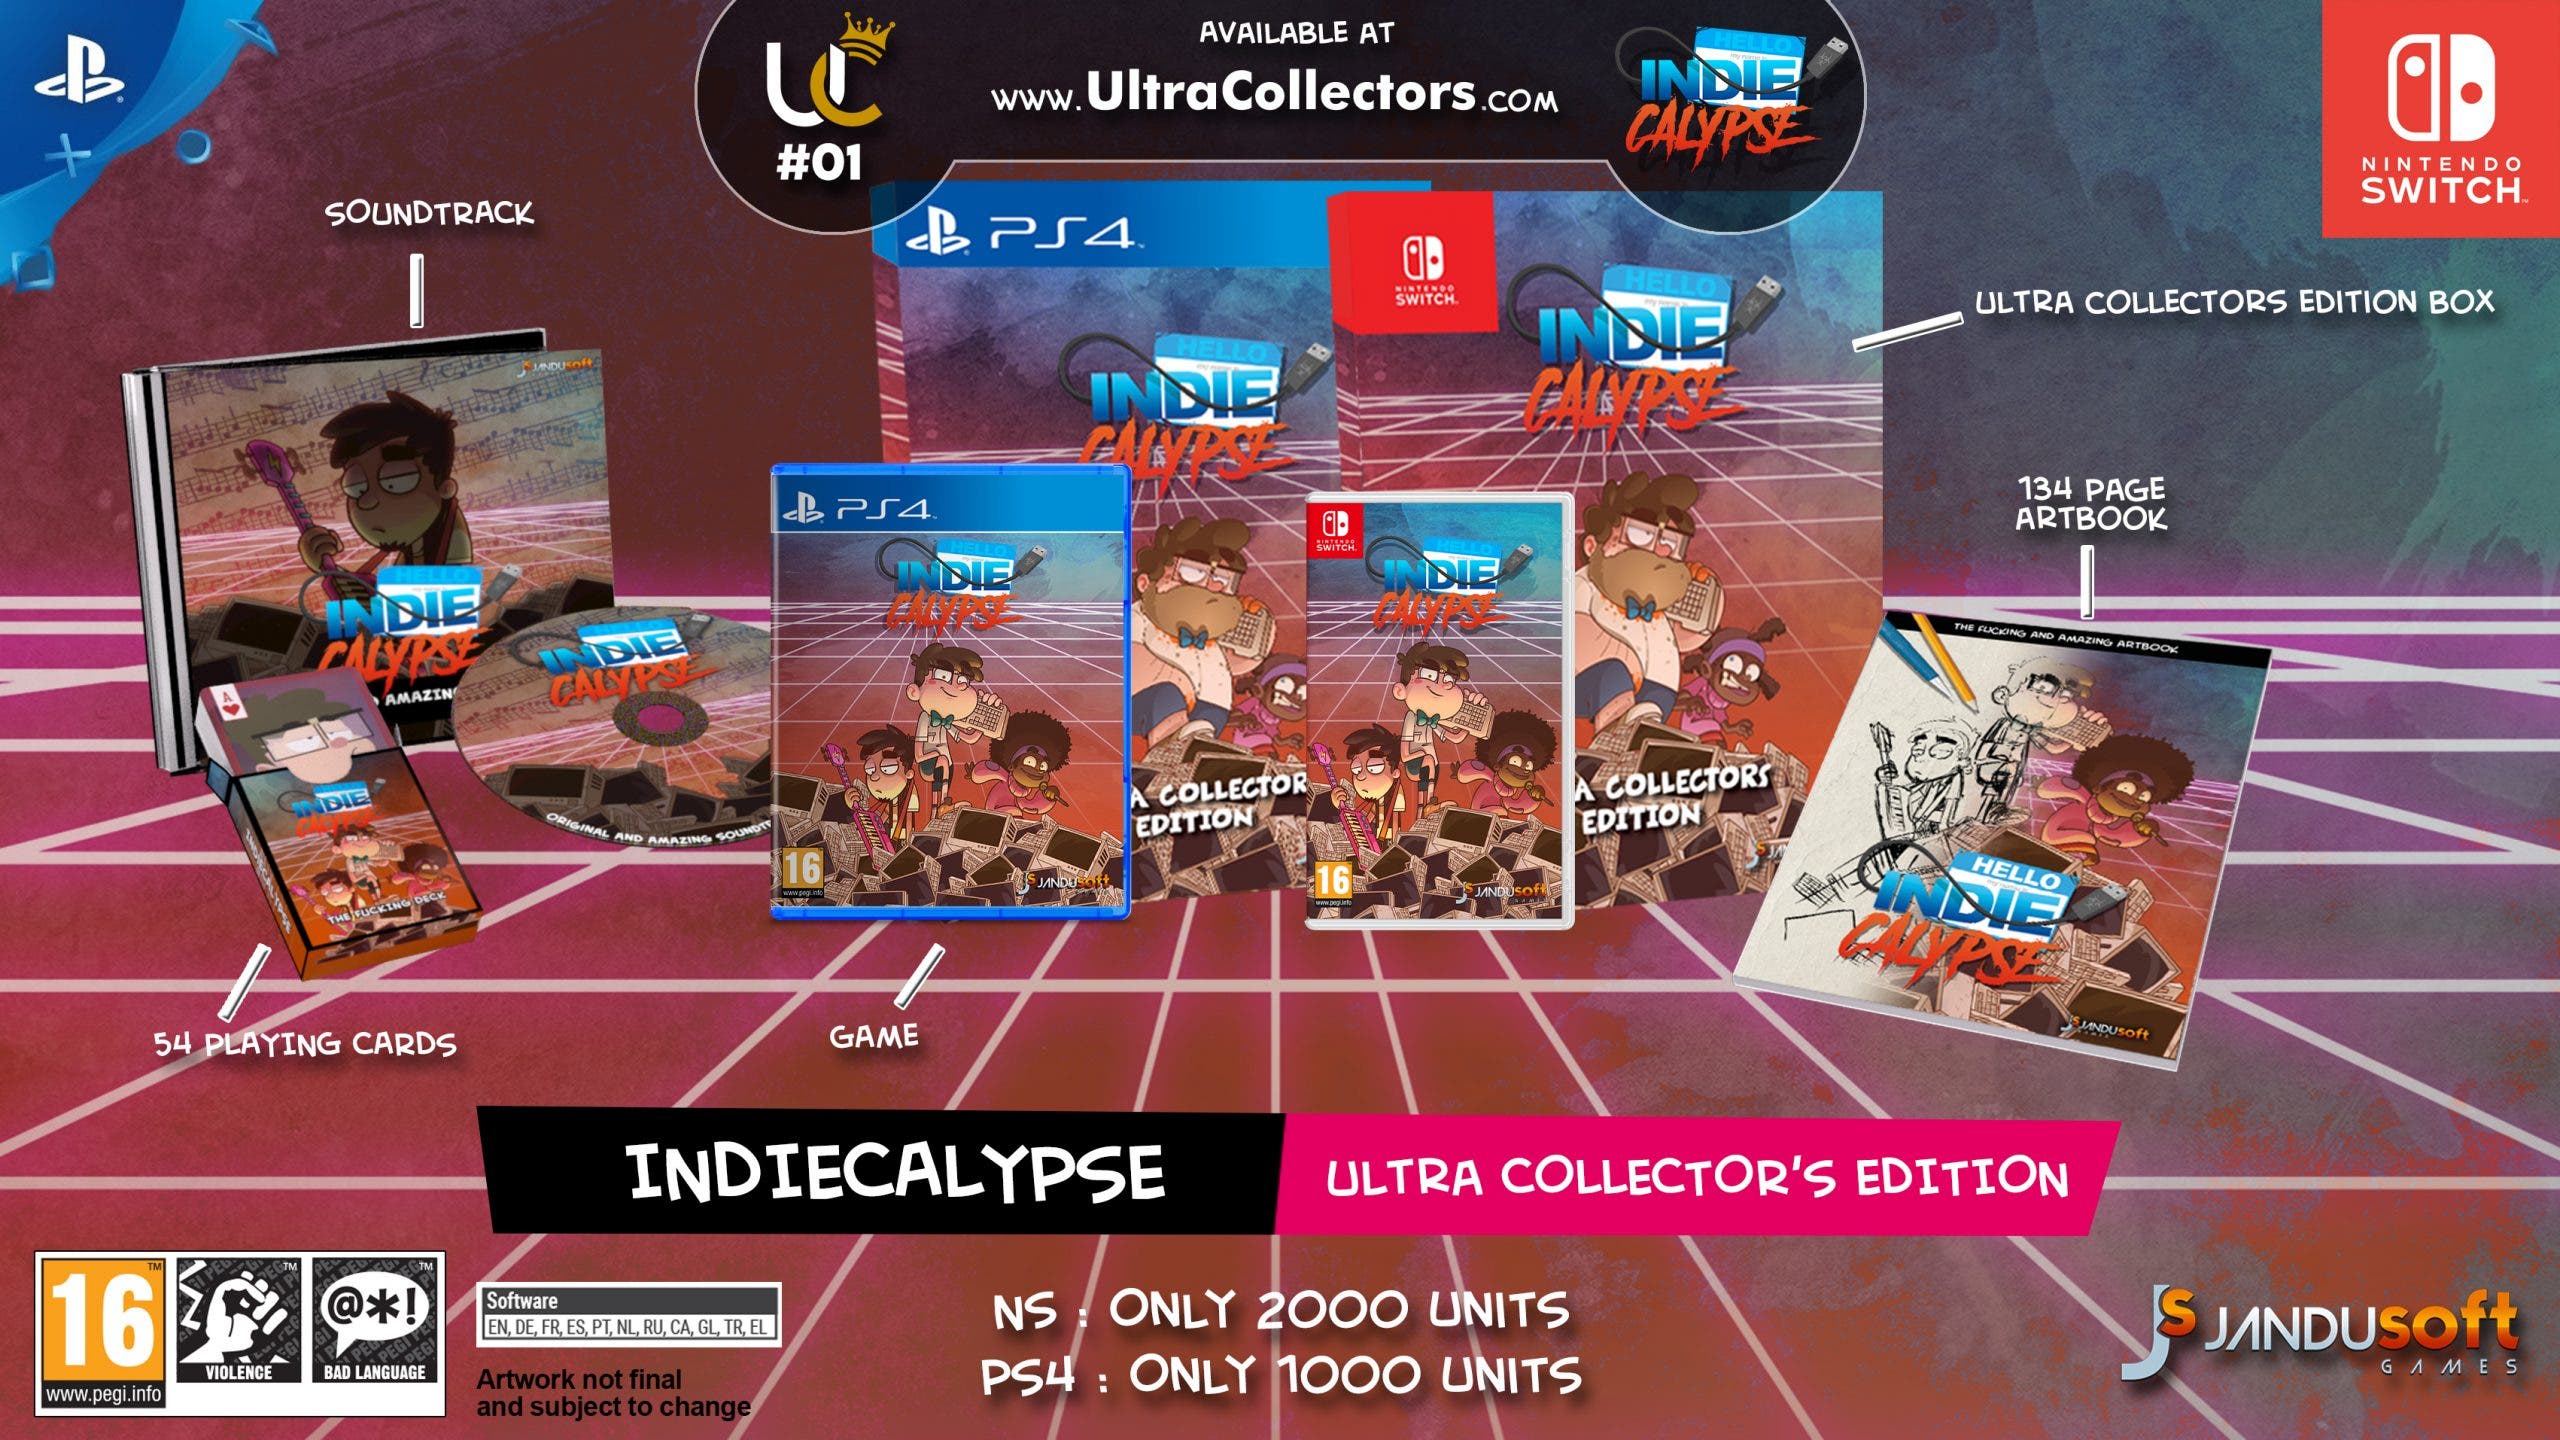 Ultra Collectors de JanduSoft ofrecerá 2000 copias de la edición especial de Indiecalypse para Nintendo Switch